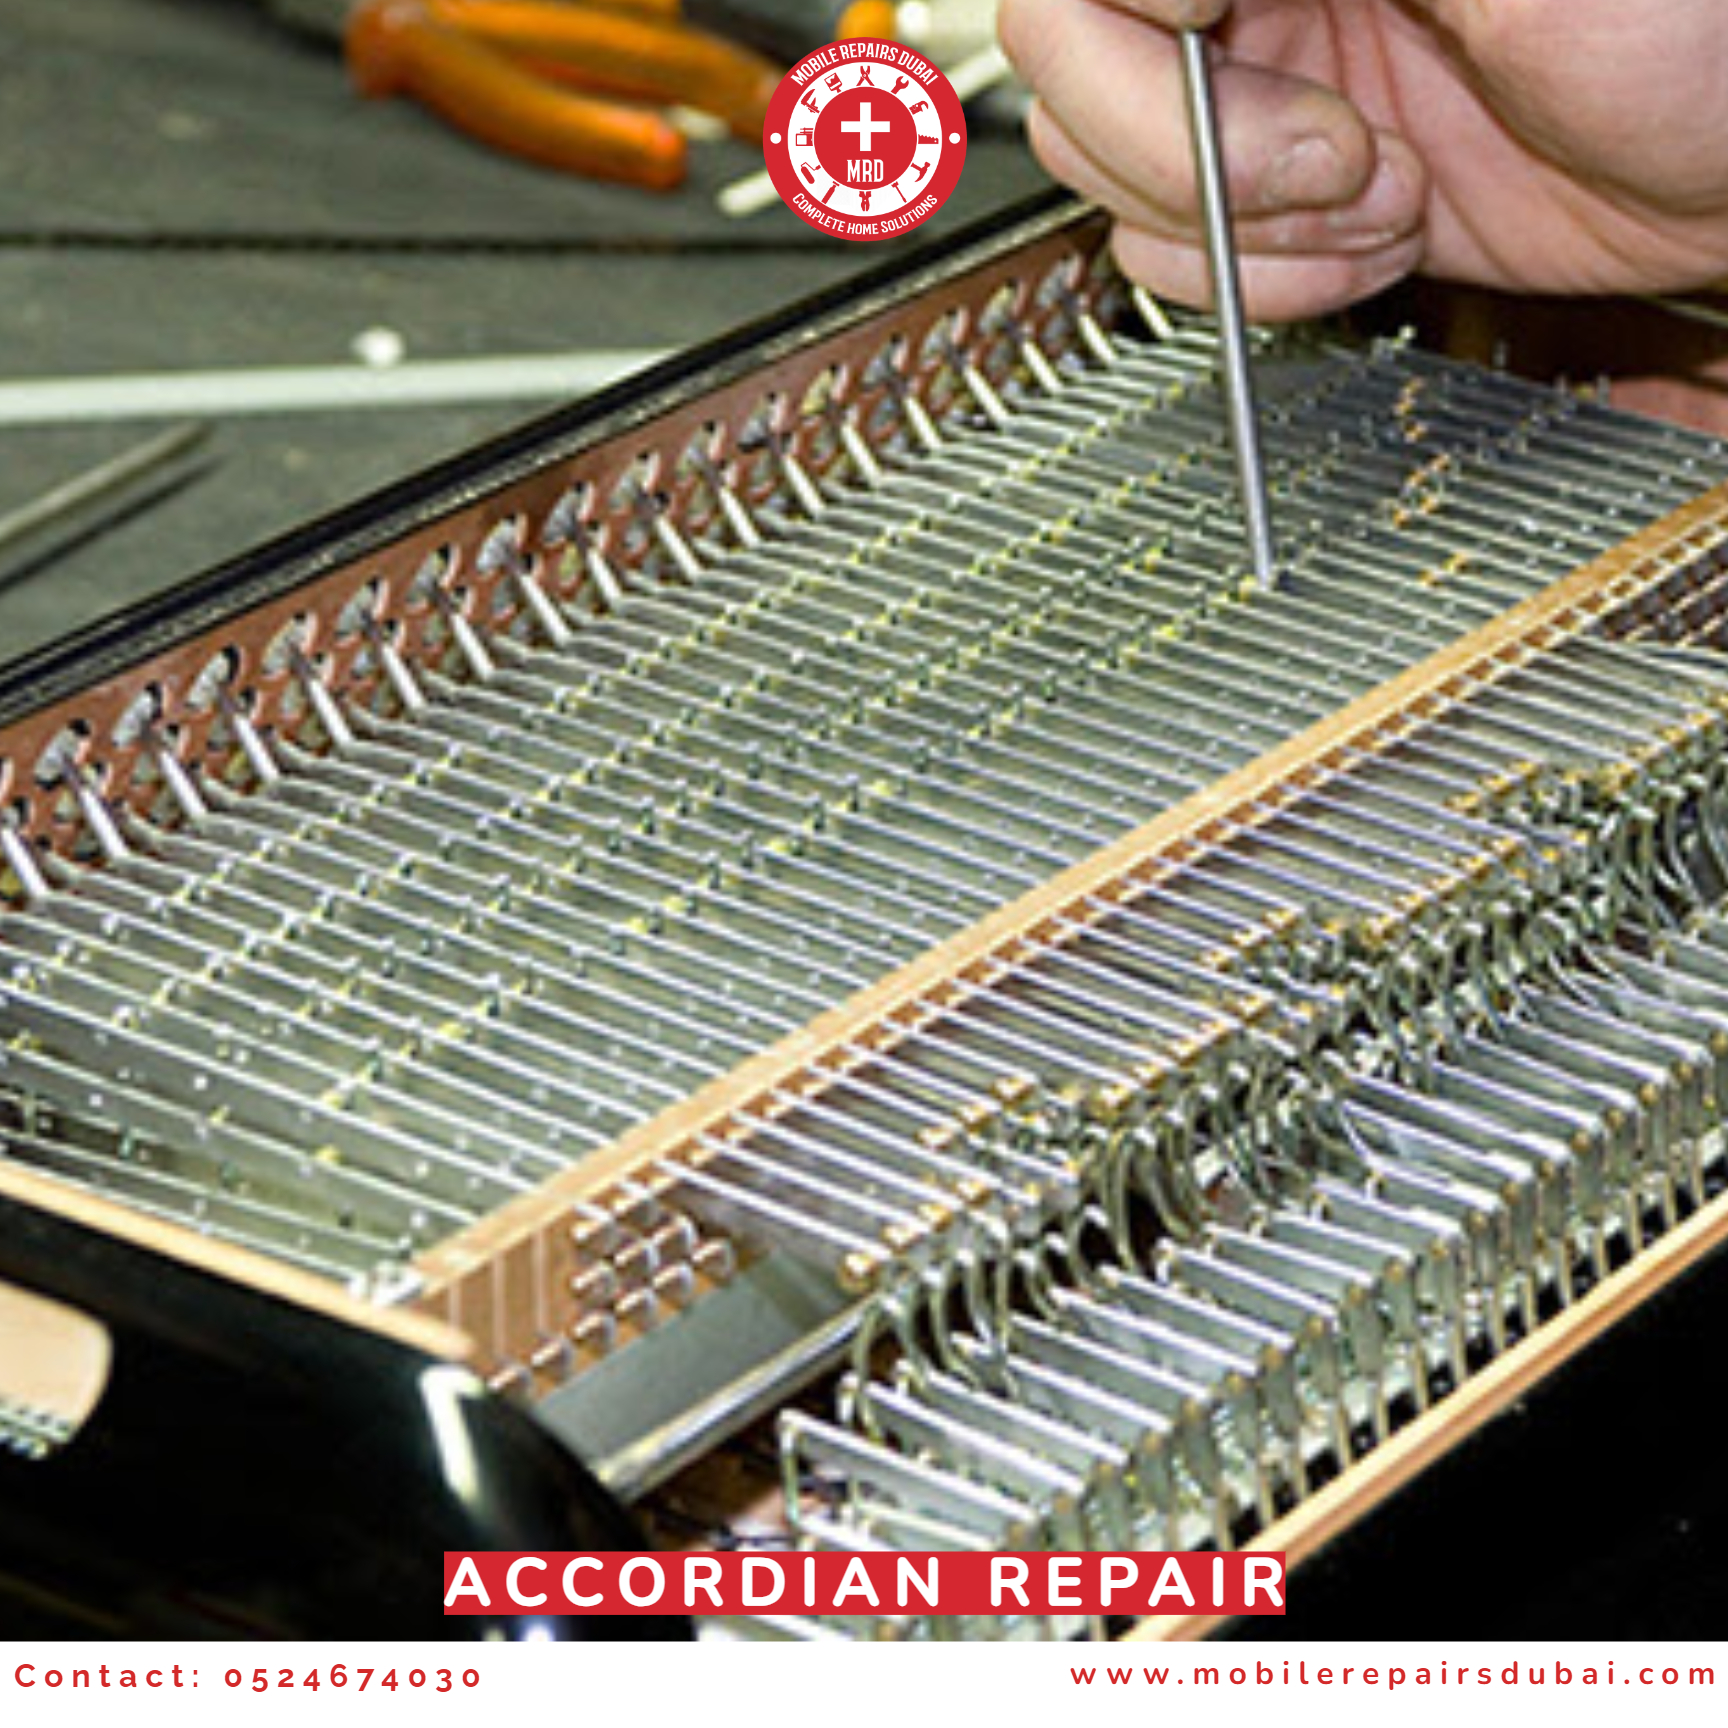 Accordion Repair - 0524674030 - MRD - Musical Instrument Repair